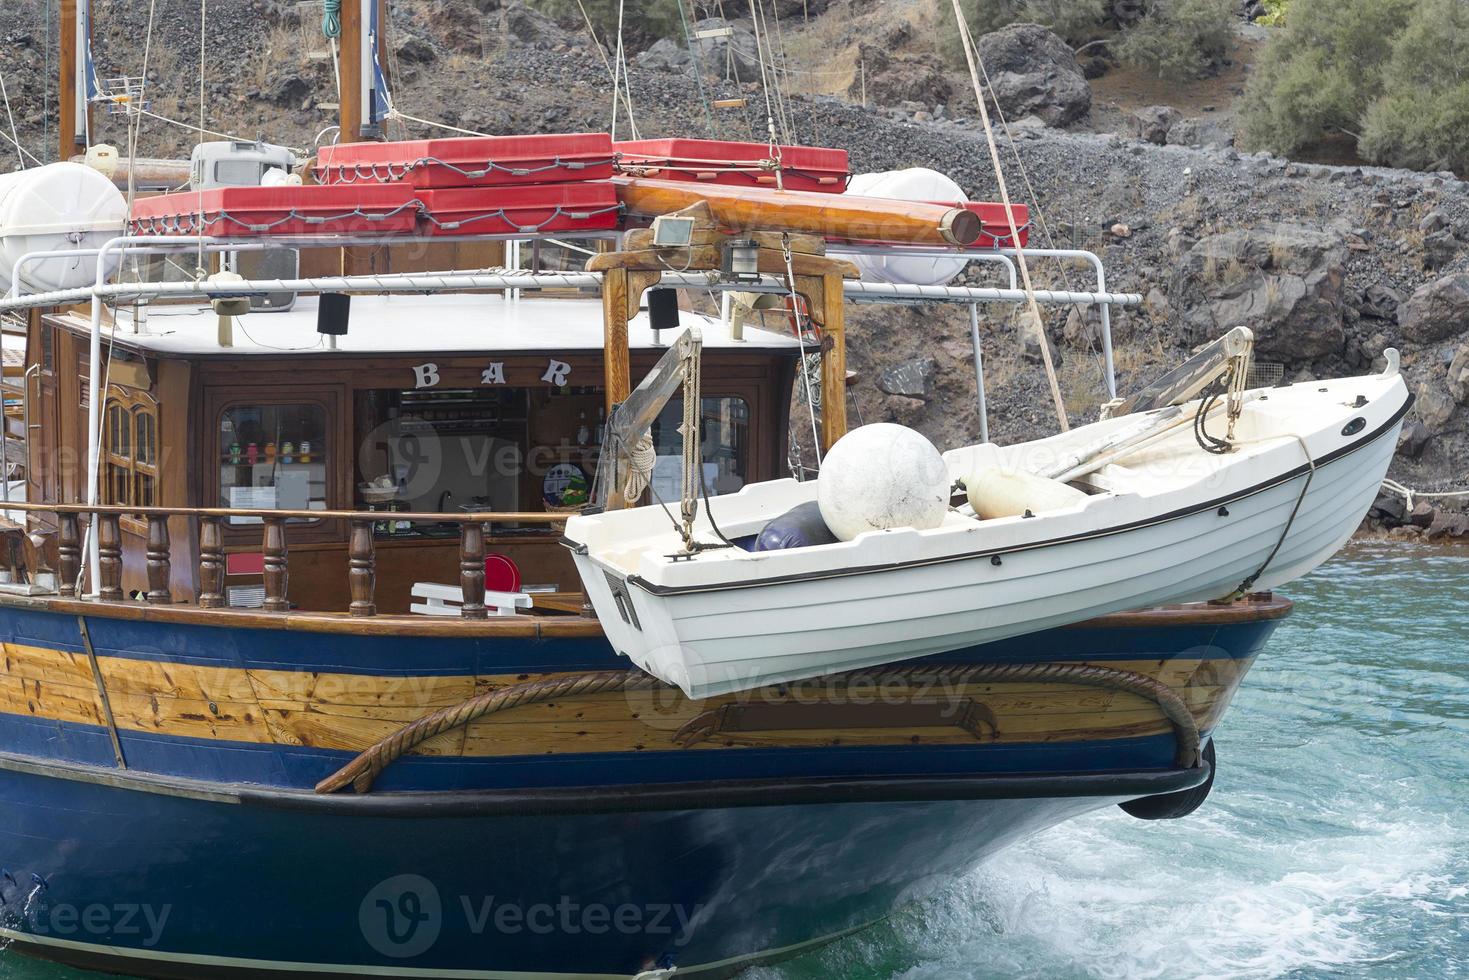 passagiersschip in de buurt van het eiland santorini. foto